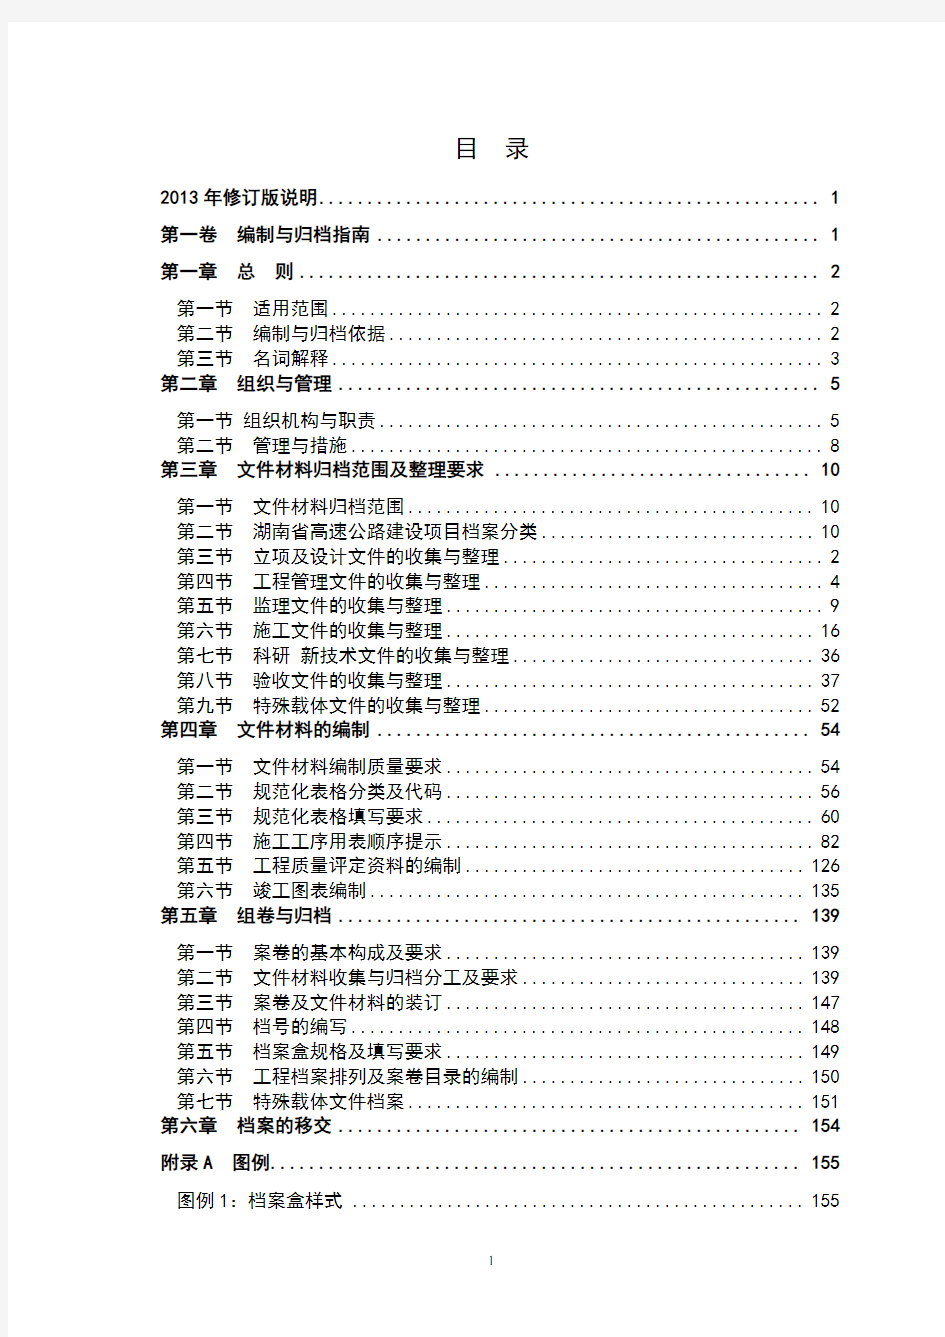 湖南省高速公路建设项目文件材料编制与归档范本《范本》第一卷2013